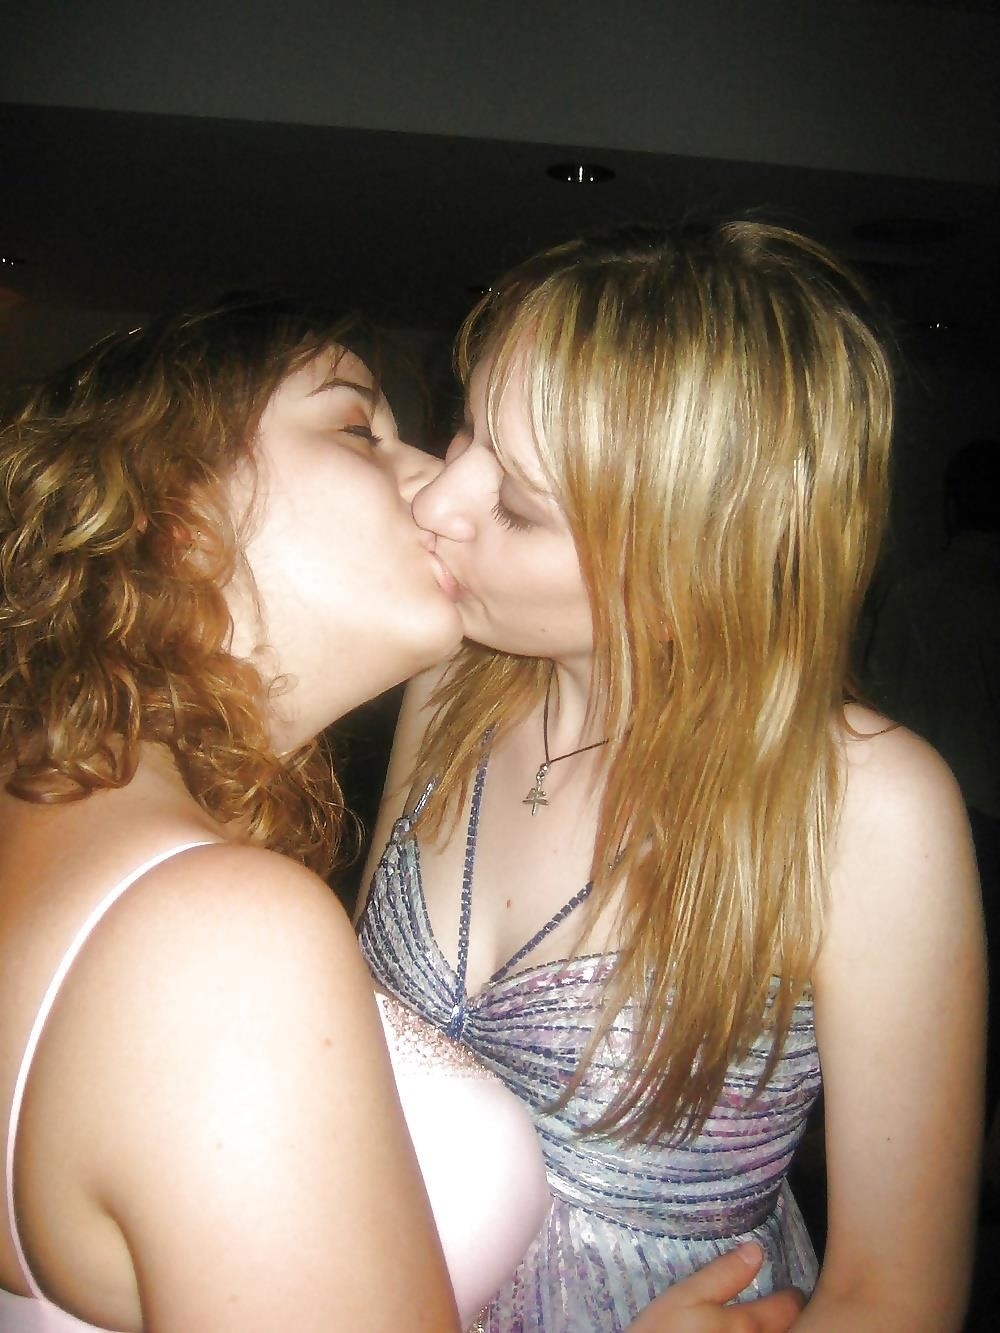 Girl on girl kissing hot-8171